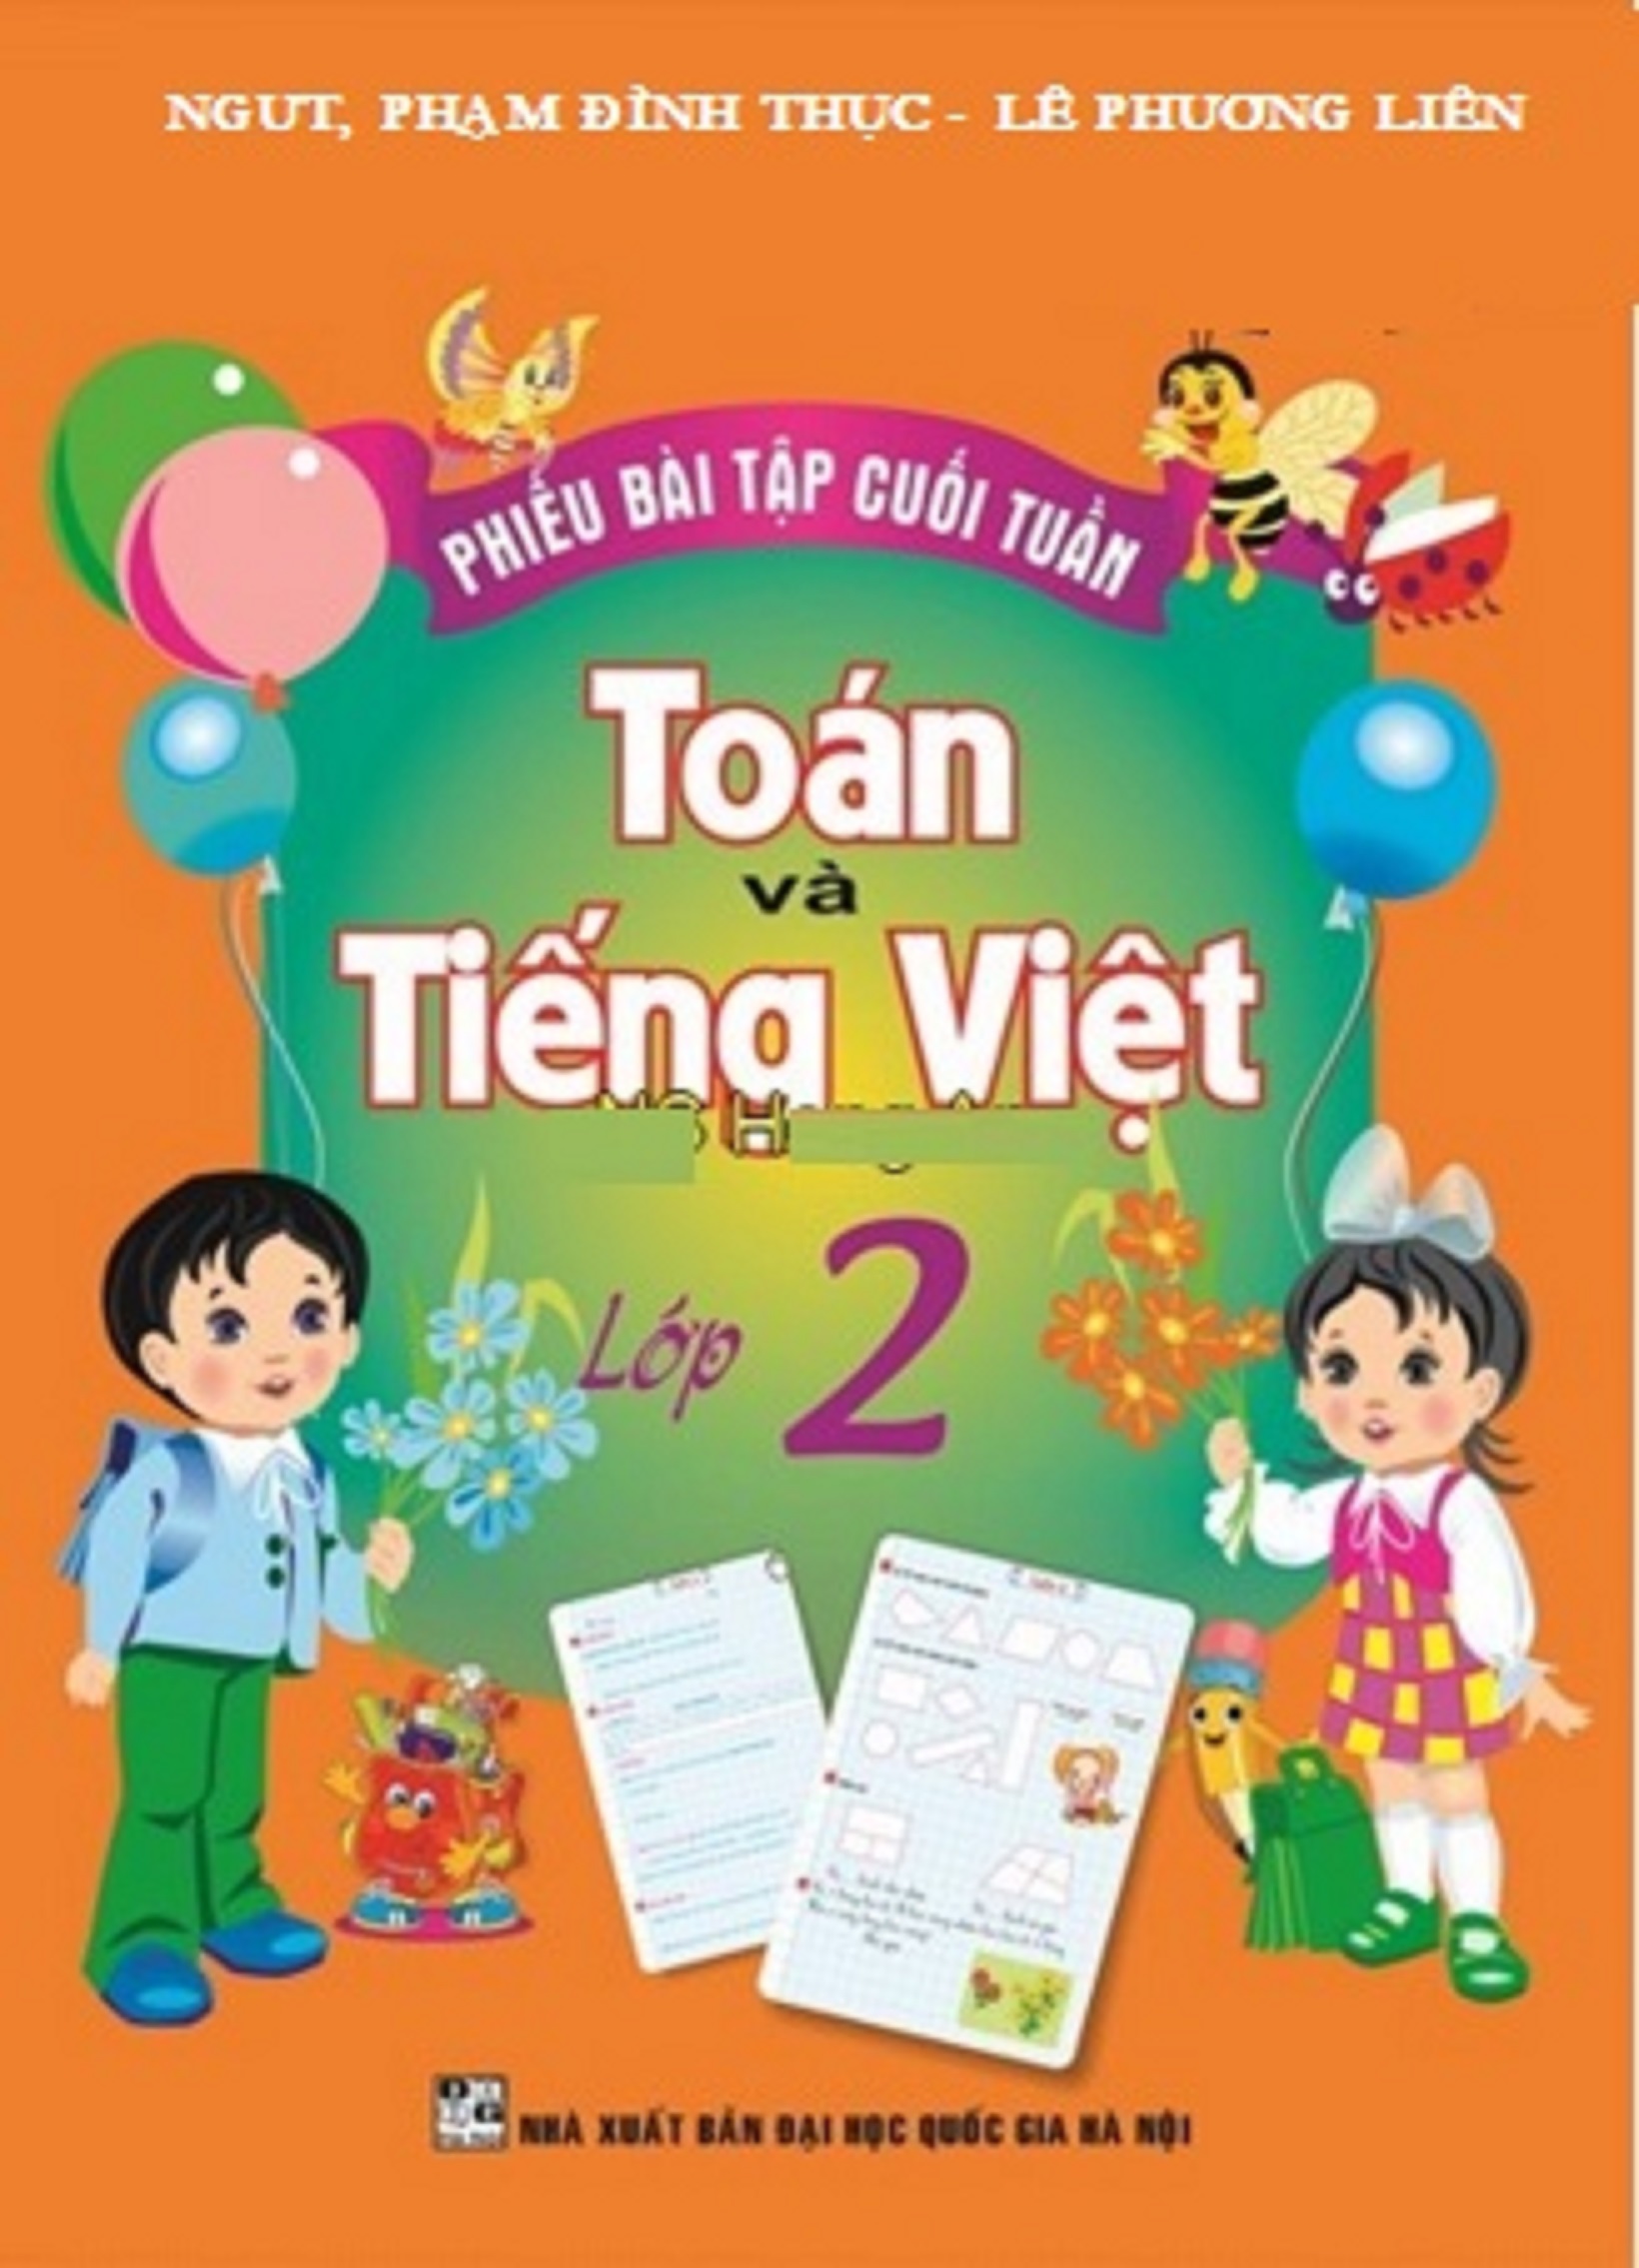 Phiếu Bài Tập Cuối Tuần Toán-Tiếng Việt Lớp 2 - HA